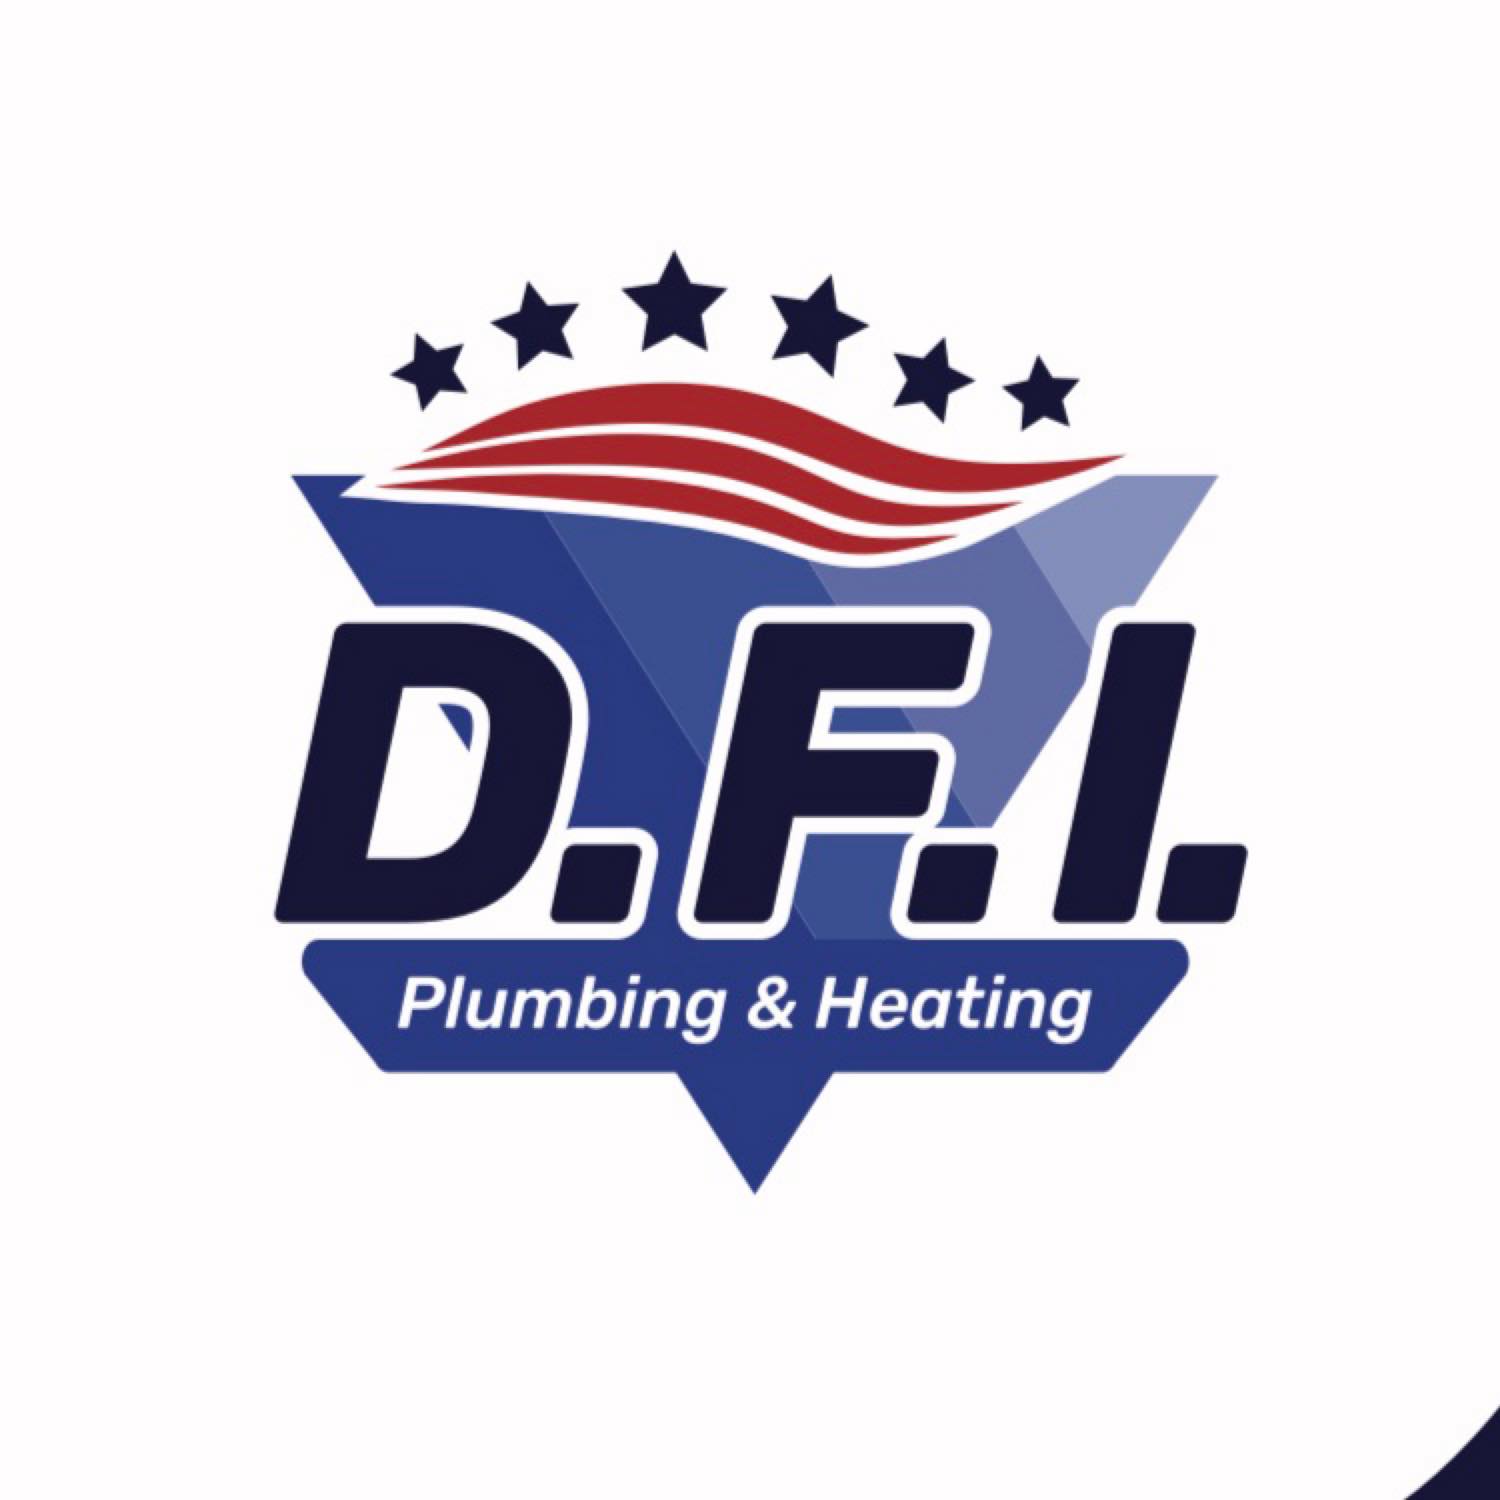 Dan Ferris Inc. Plumbing & Heating Contractor 490 Ladner Rd, Easton Maine 04740